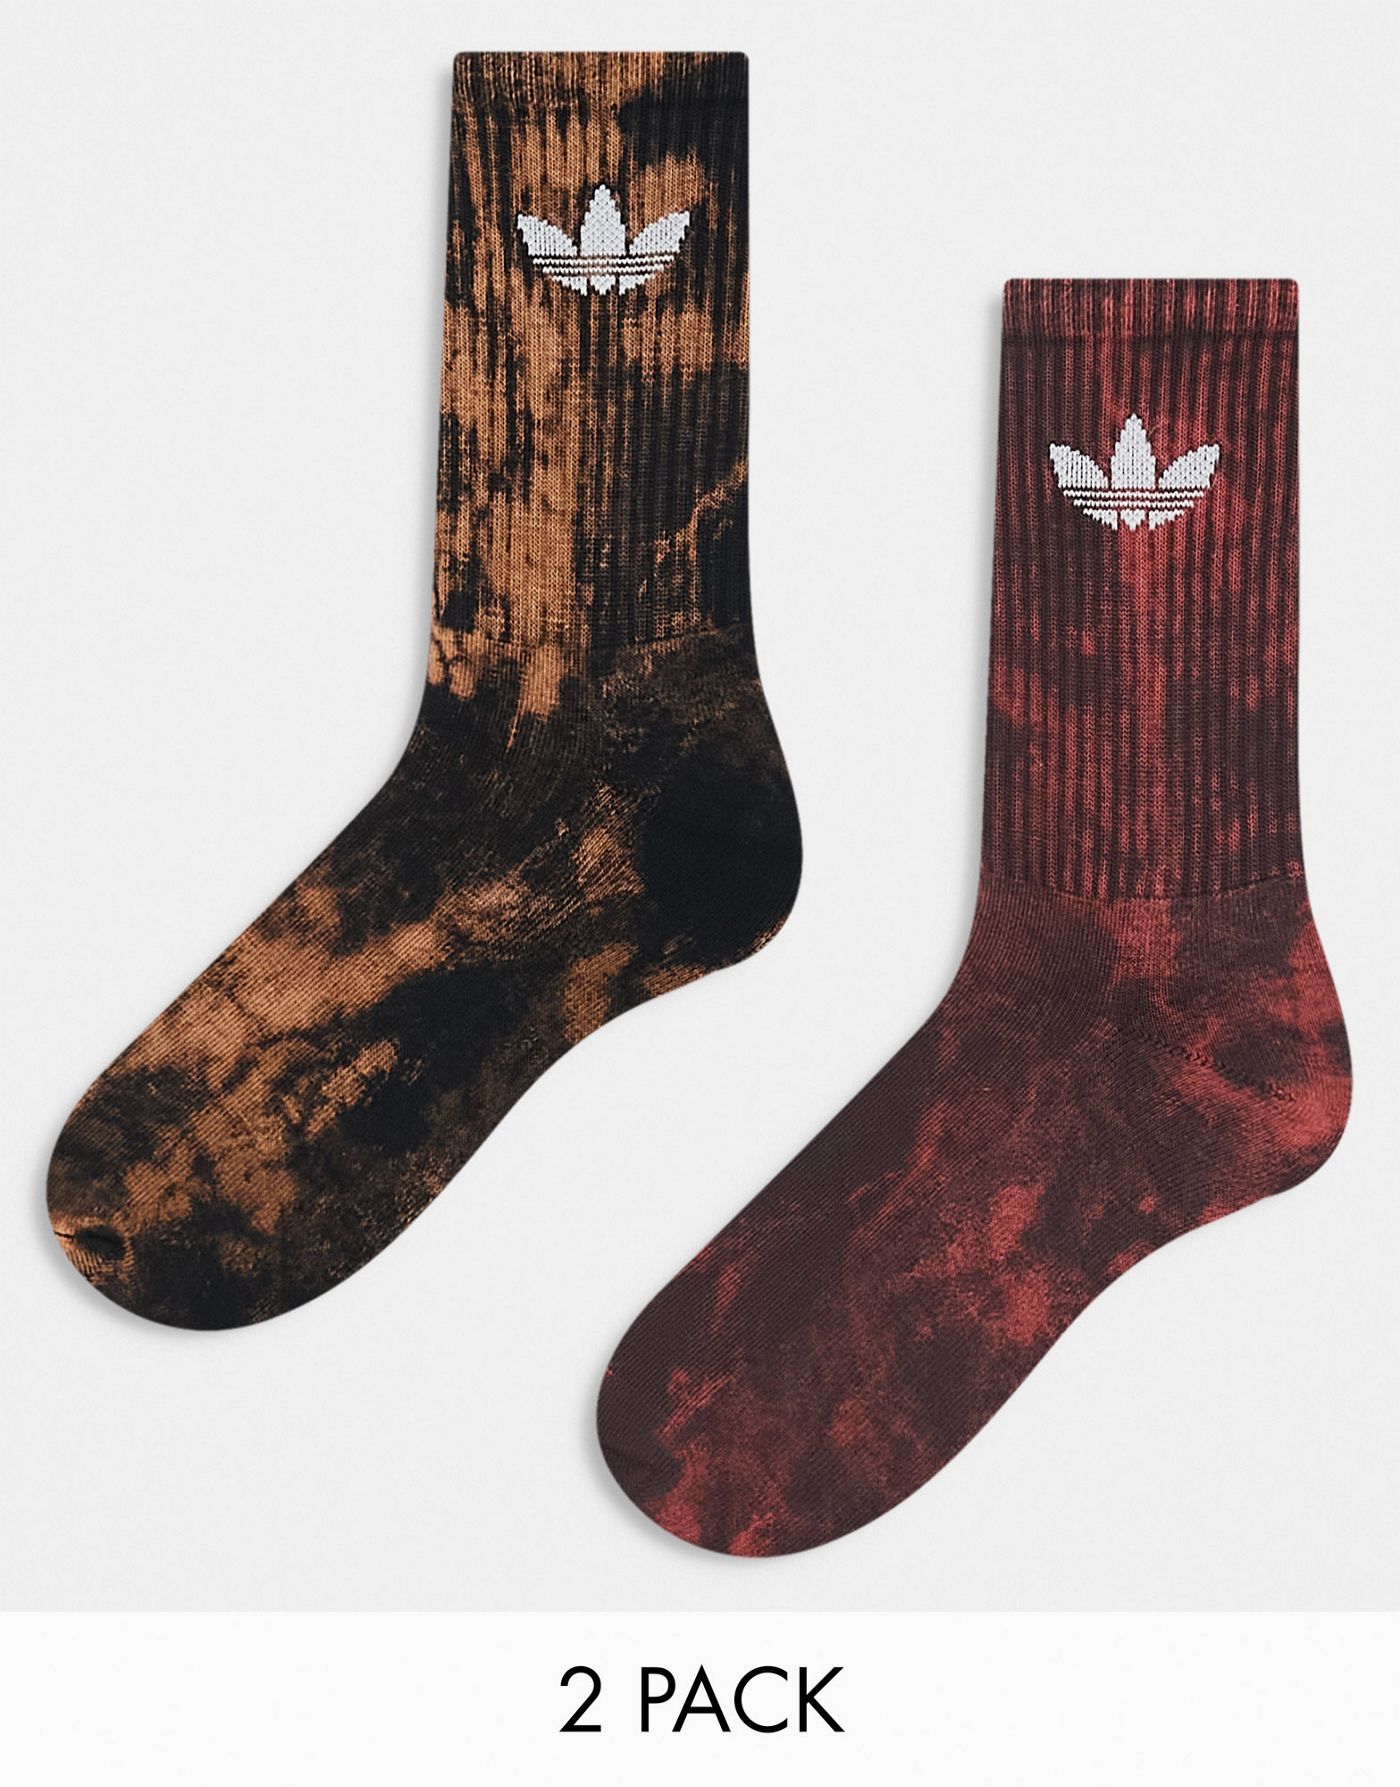 adidas Originals 2 pack socks in red/brown tie dye